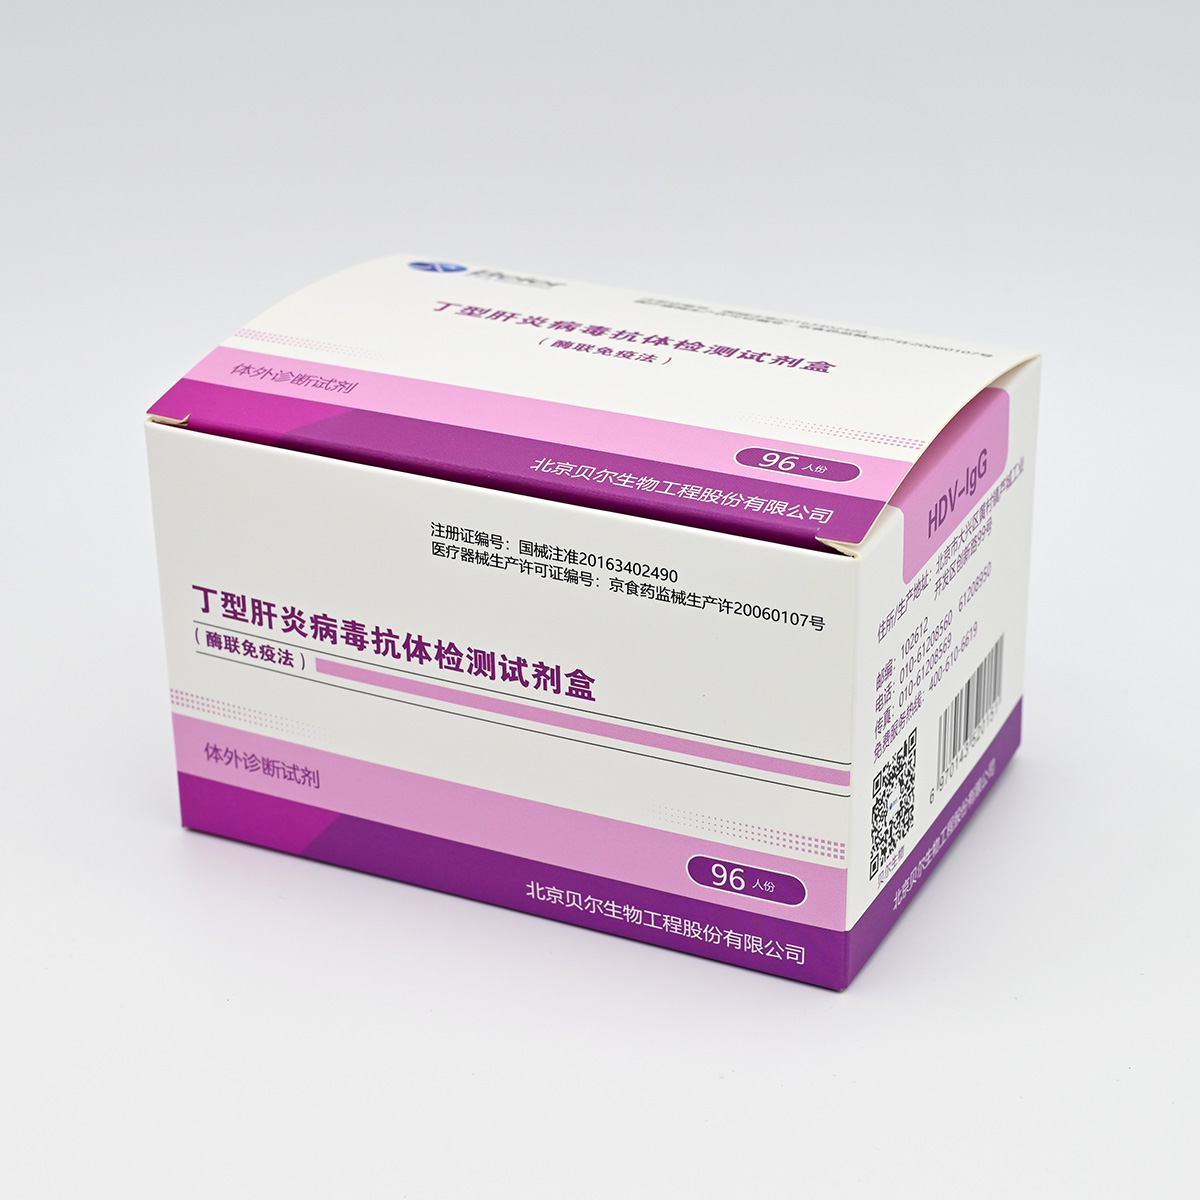 【贝尔】丁型肝炎病毒IgG抗体检测试剂盒(HDV-IgG)(酶联免疫法)